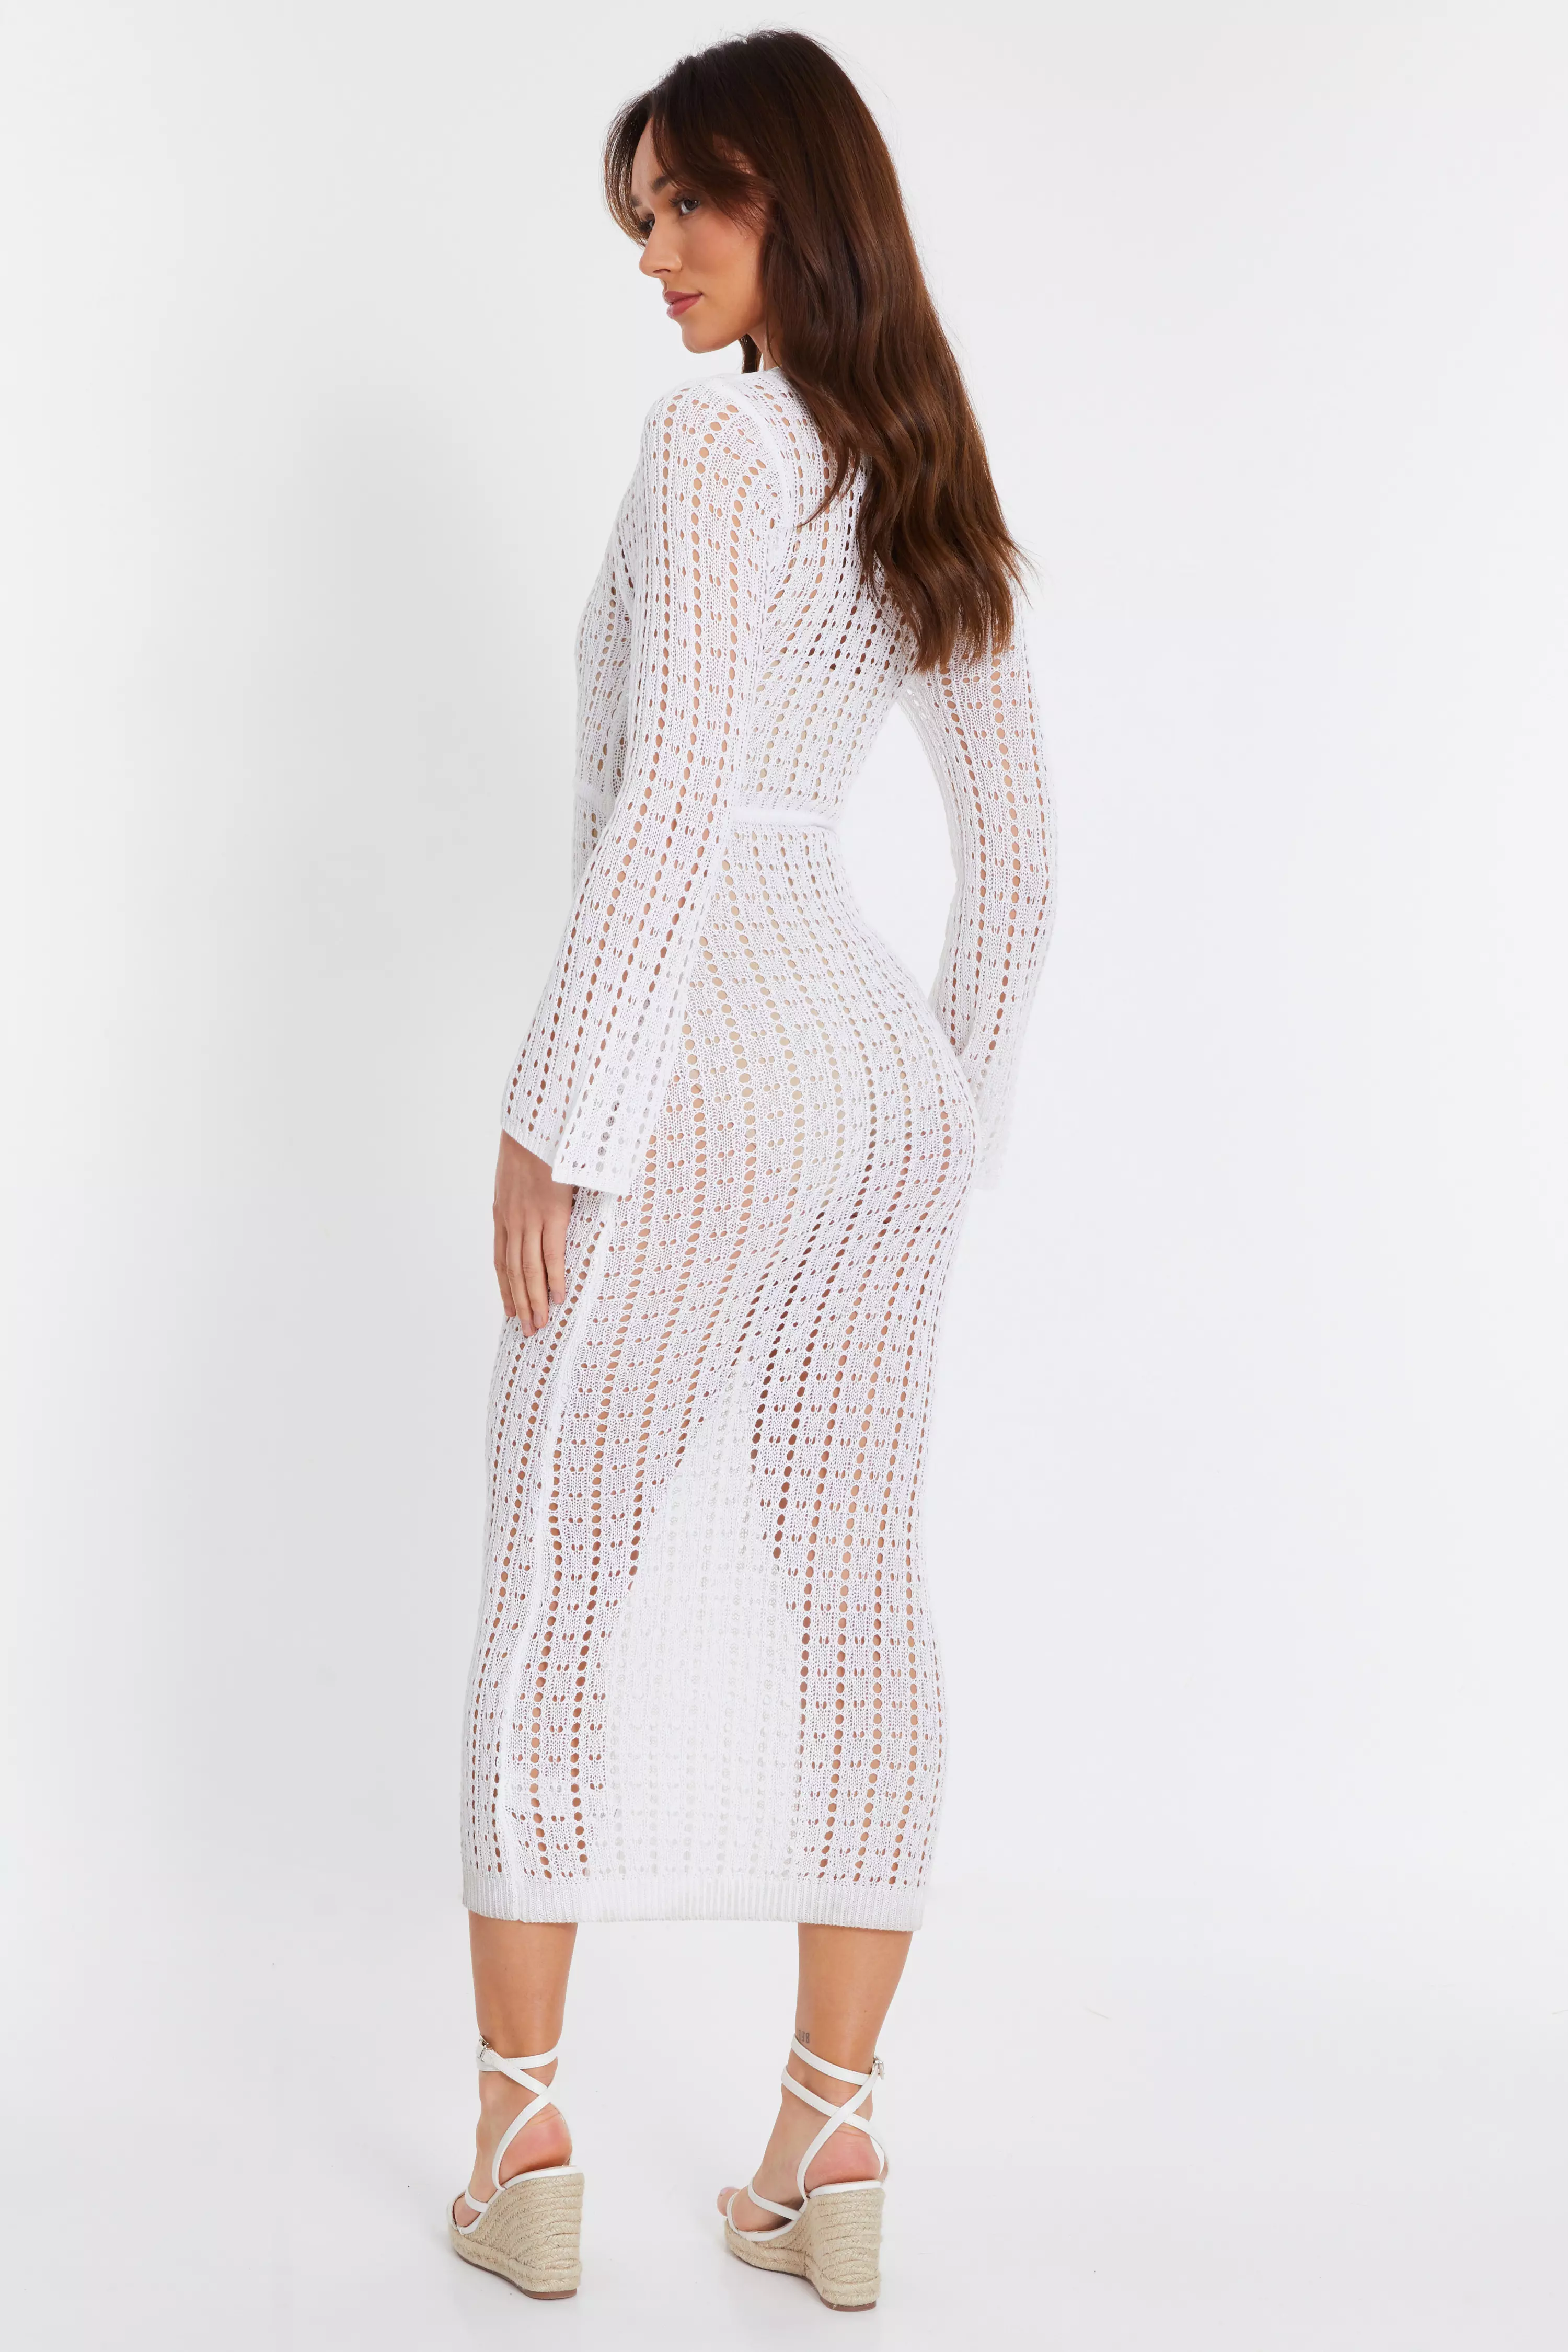 White Crochet Maxi Dress